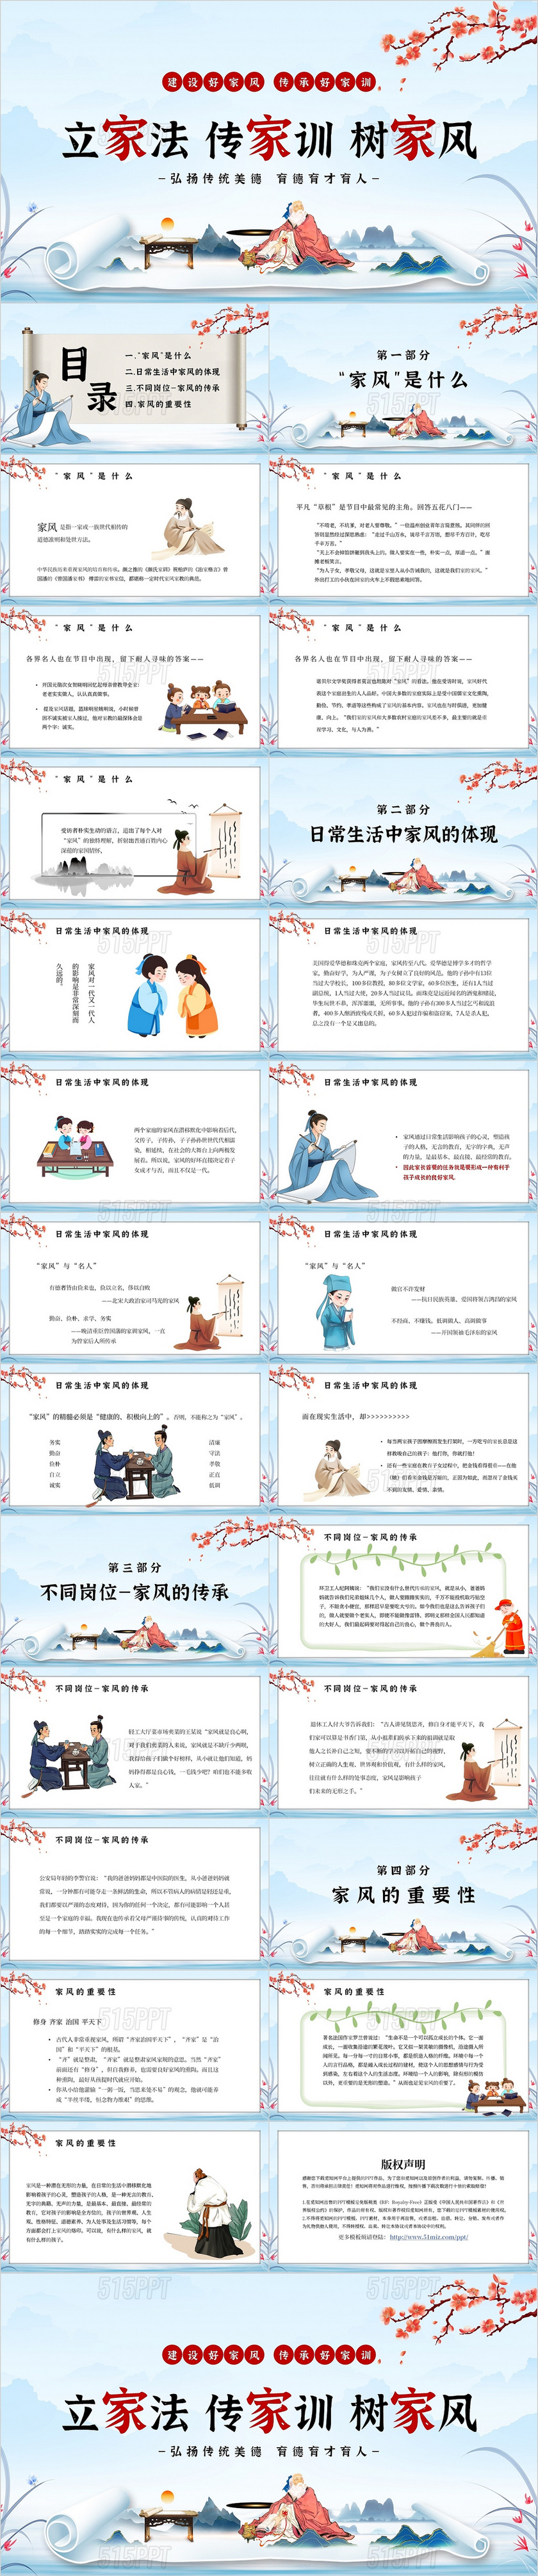 蓝色中国风立家法传家训树家风家庭家教家风主题PPT模板